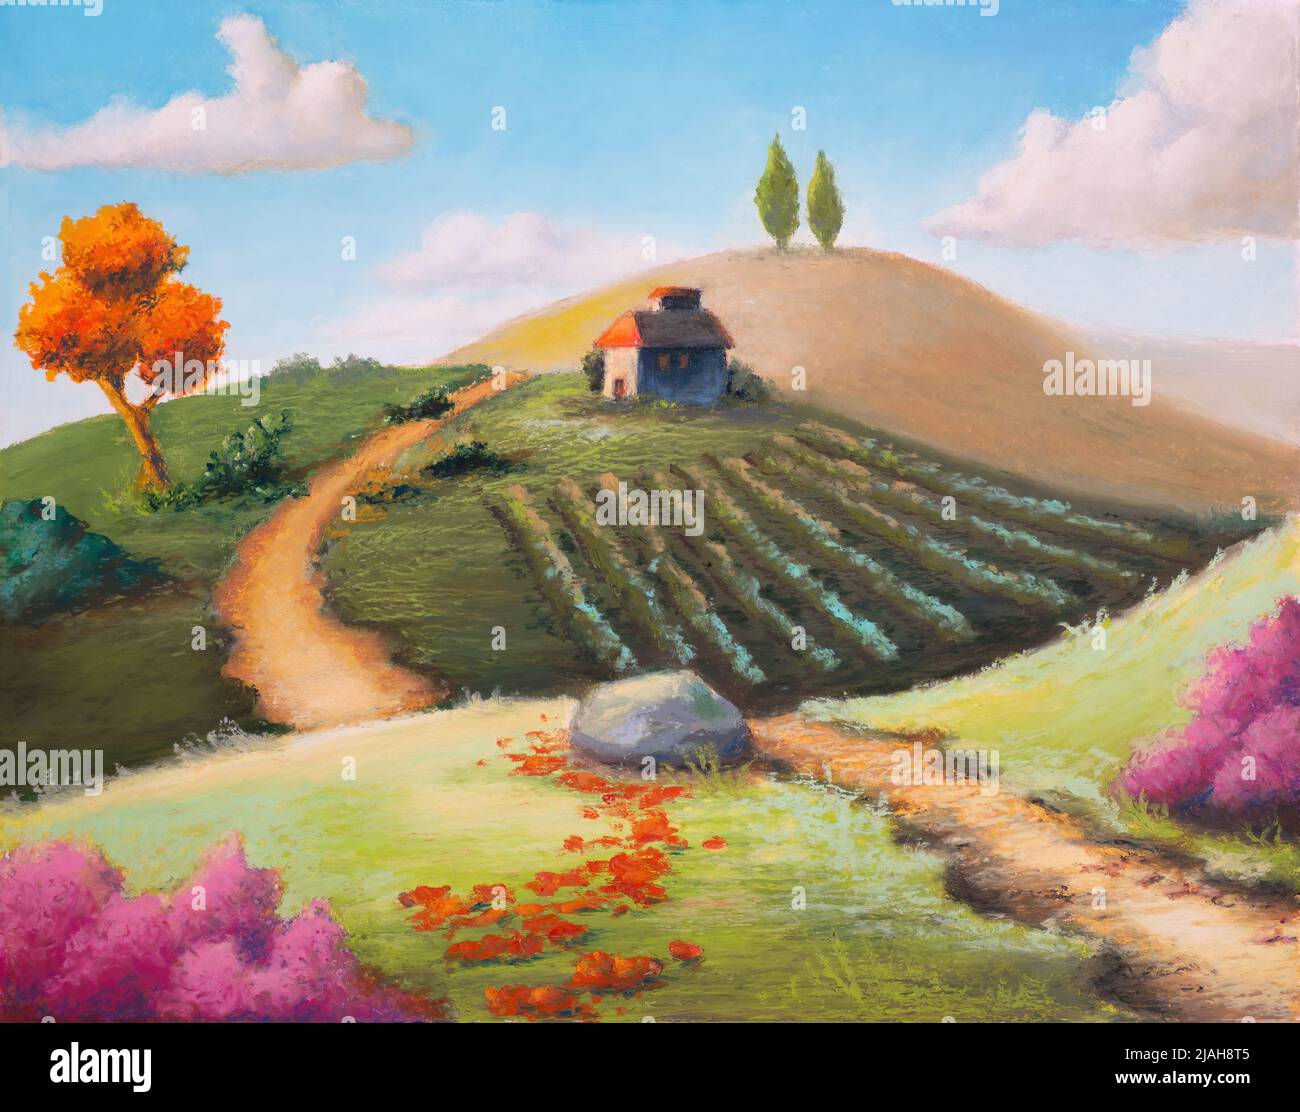 Paisaje rural imaginario con una vegetación colorida. Ilustración original en color pastel. Foto de stock